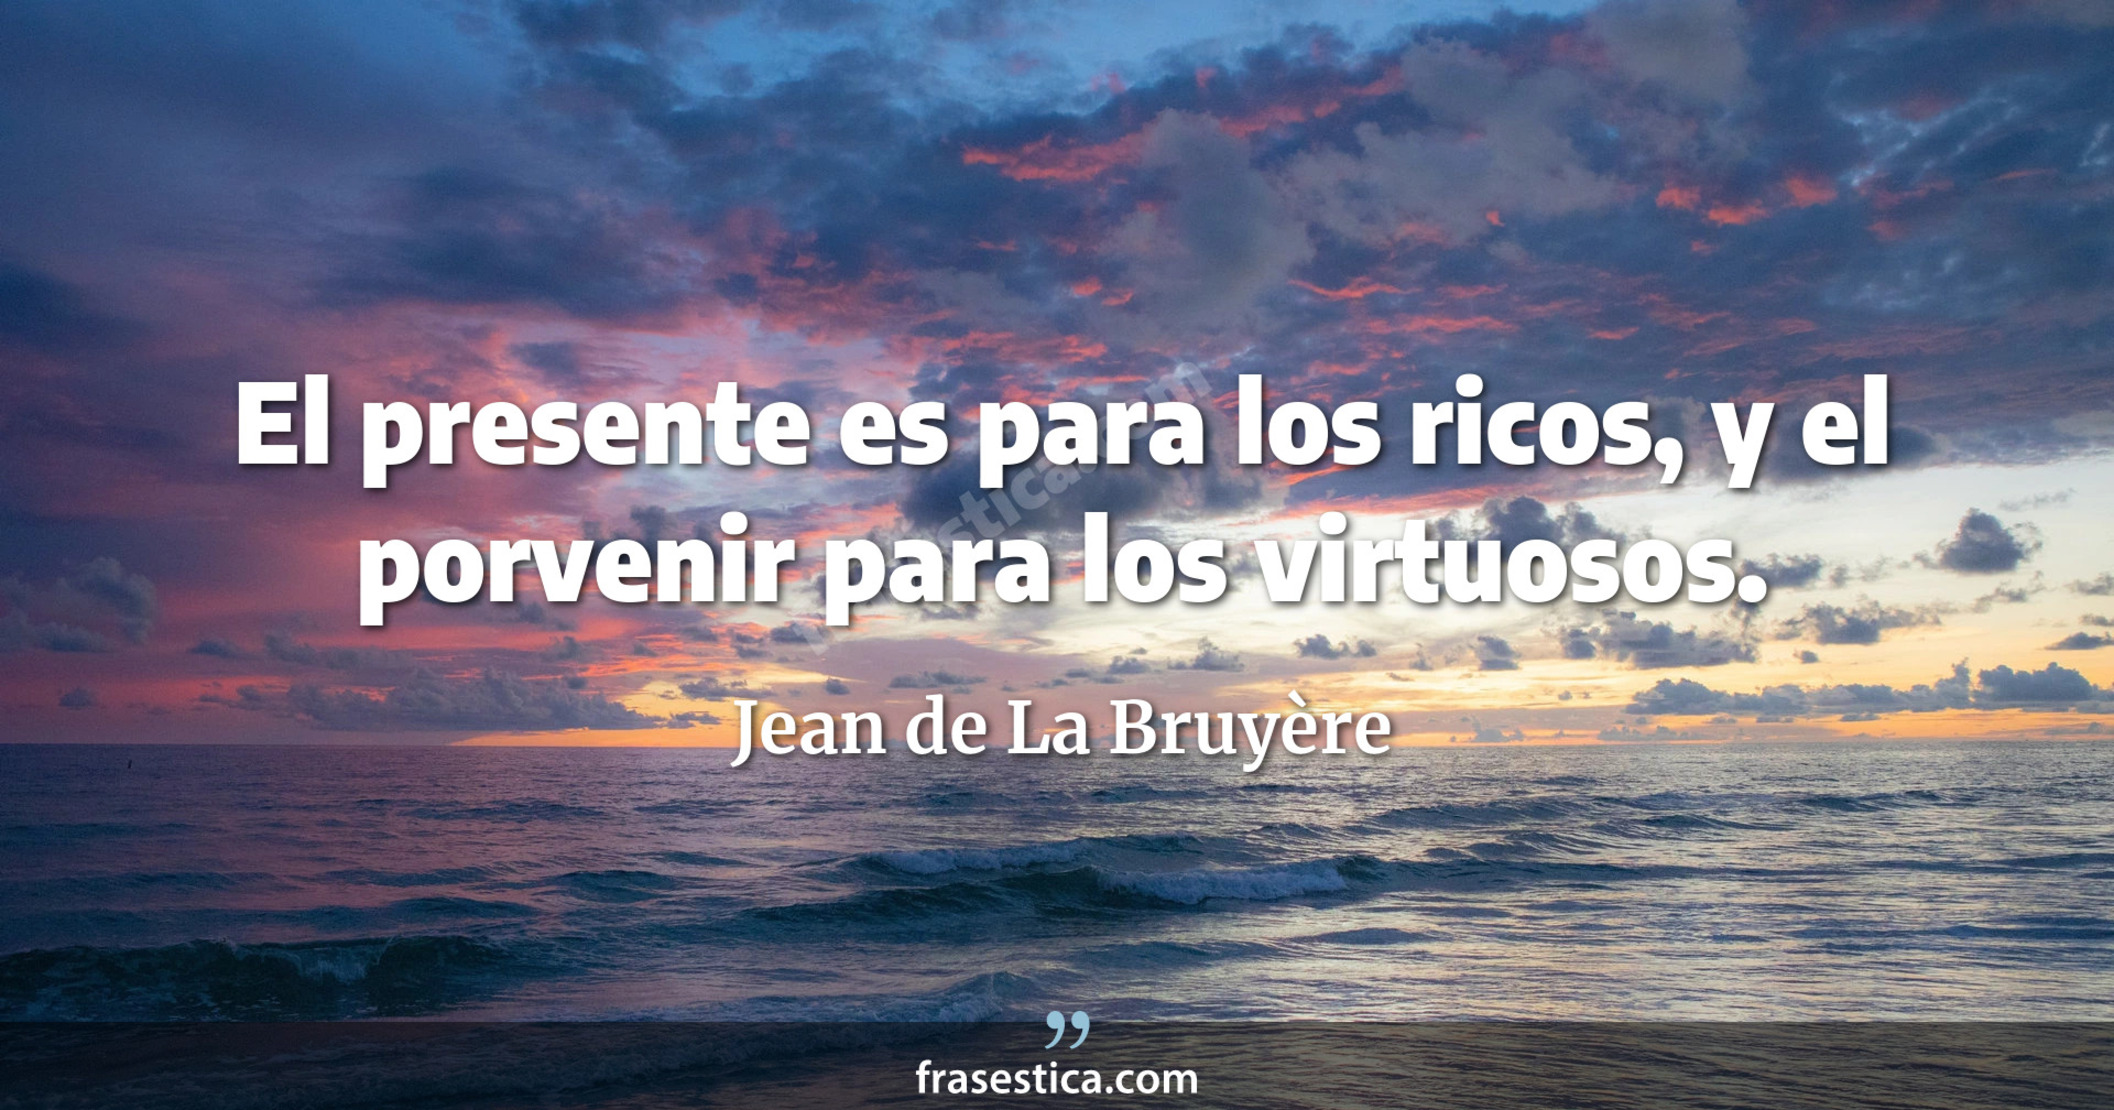 El presente es para los ricos, y el porvenir para los virtuosos. - Jean de La Bruyère